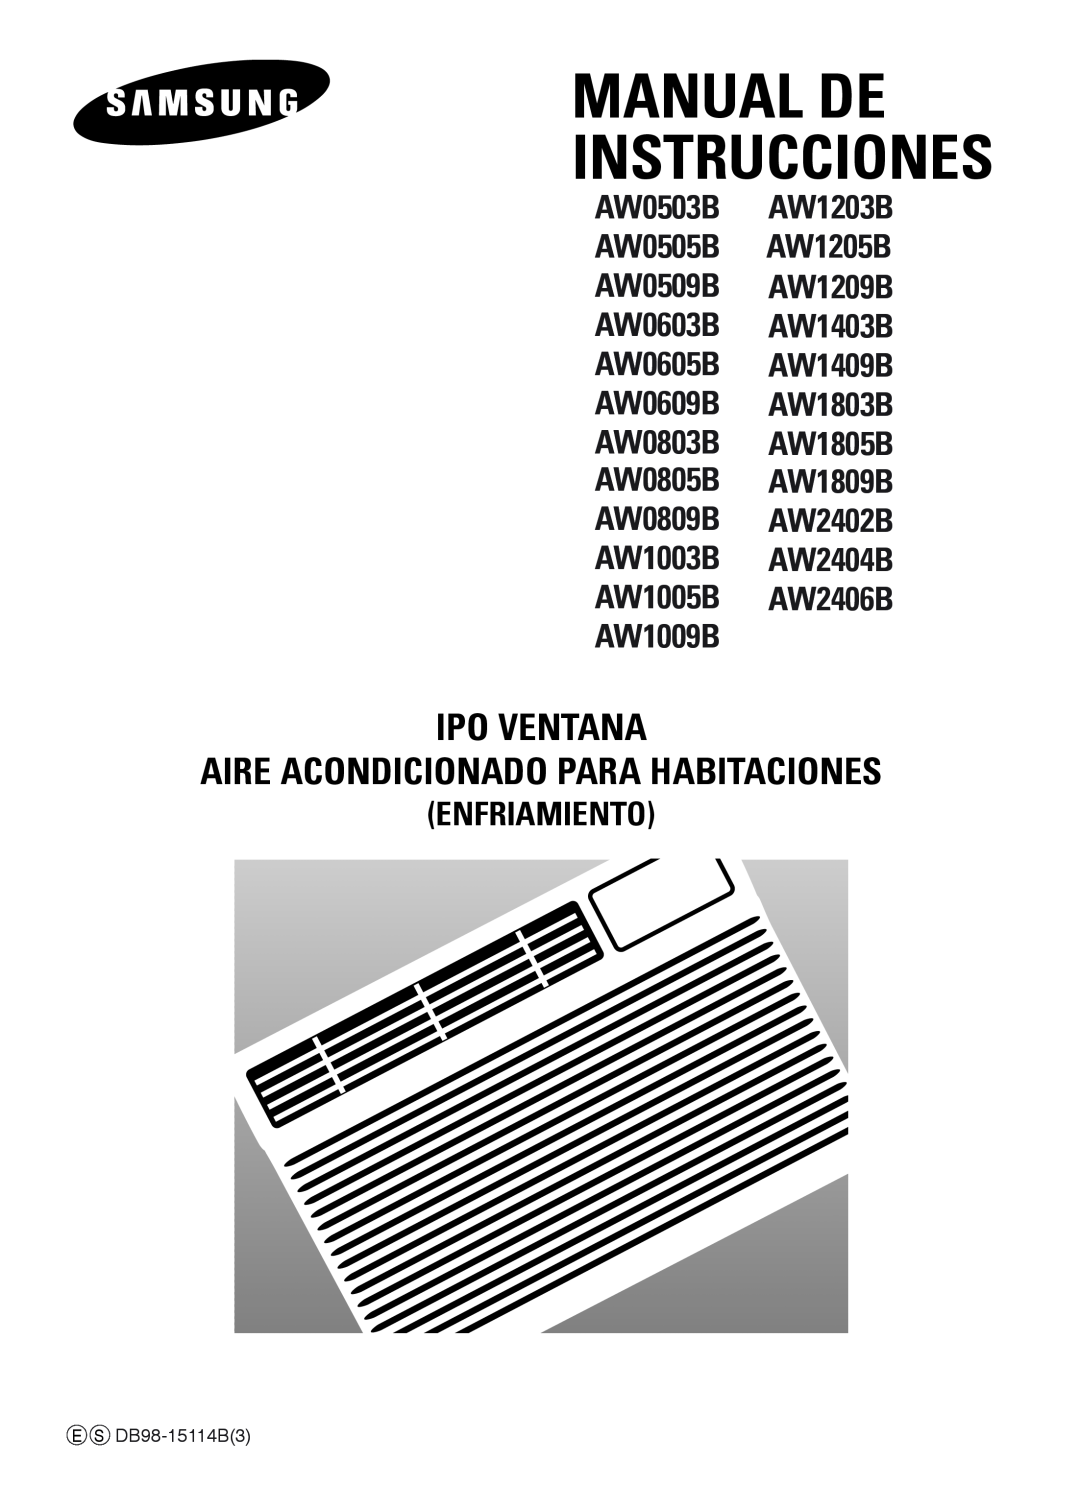 Samsung manual Manual De Instrucciones, Ipo Ventana Aire Acondicionado Para Habitaciones, Enfriamiento, E S DB98-15114B3 